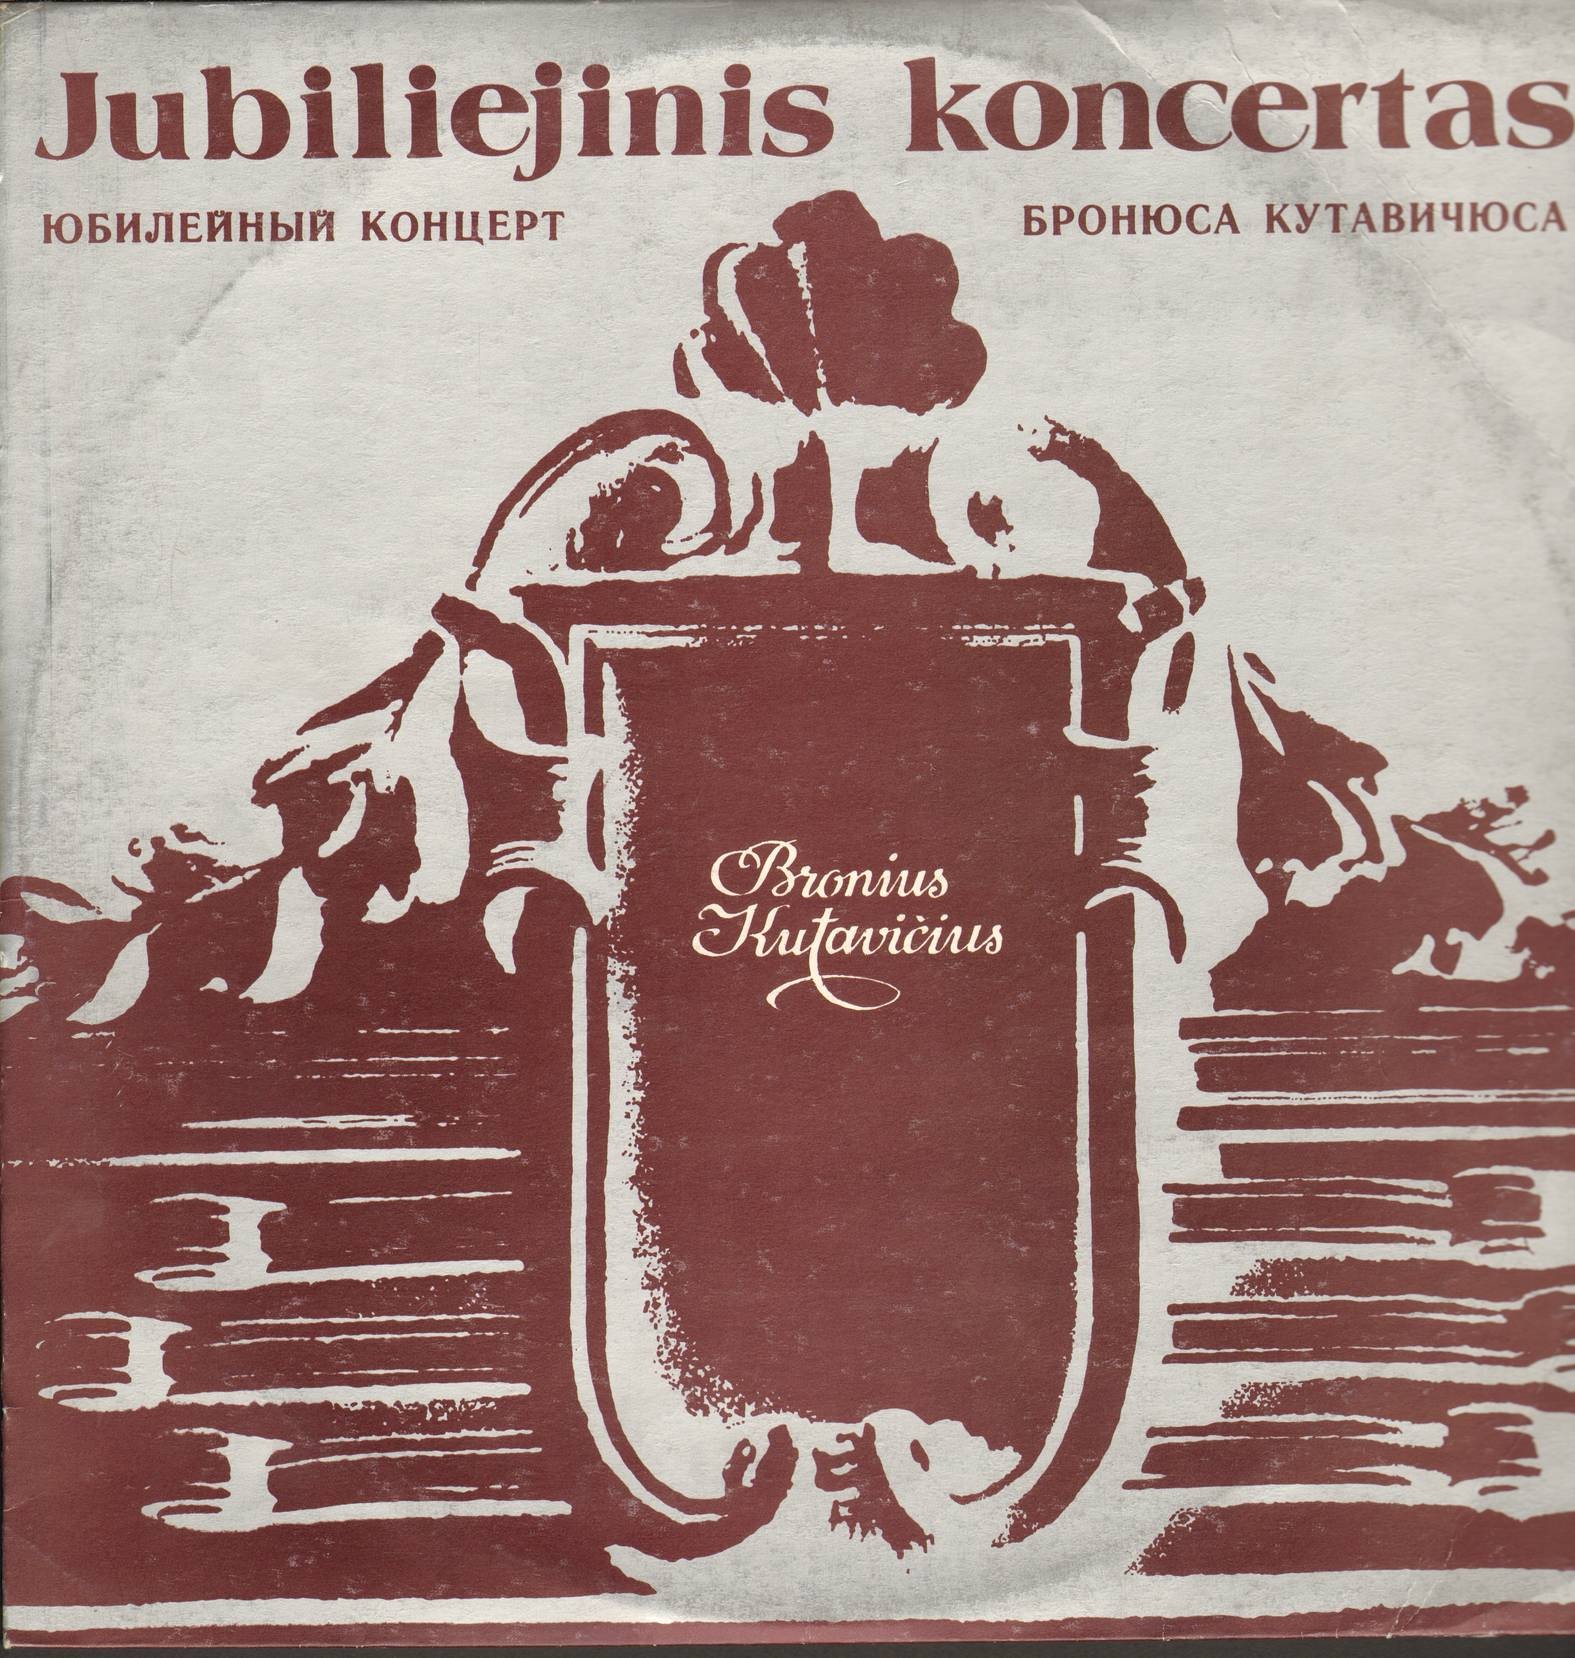 Юбилейный концерт Бронюса КУТАВИЧЮСА (1932)